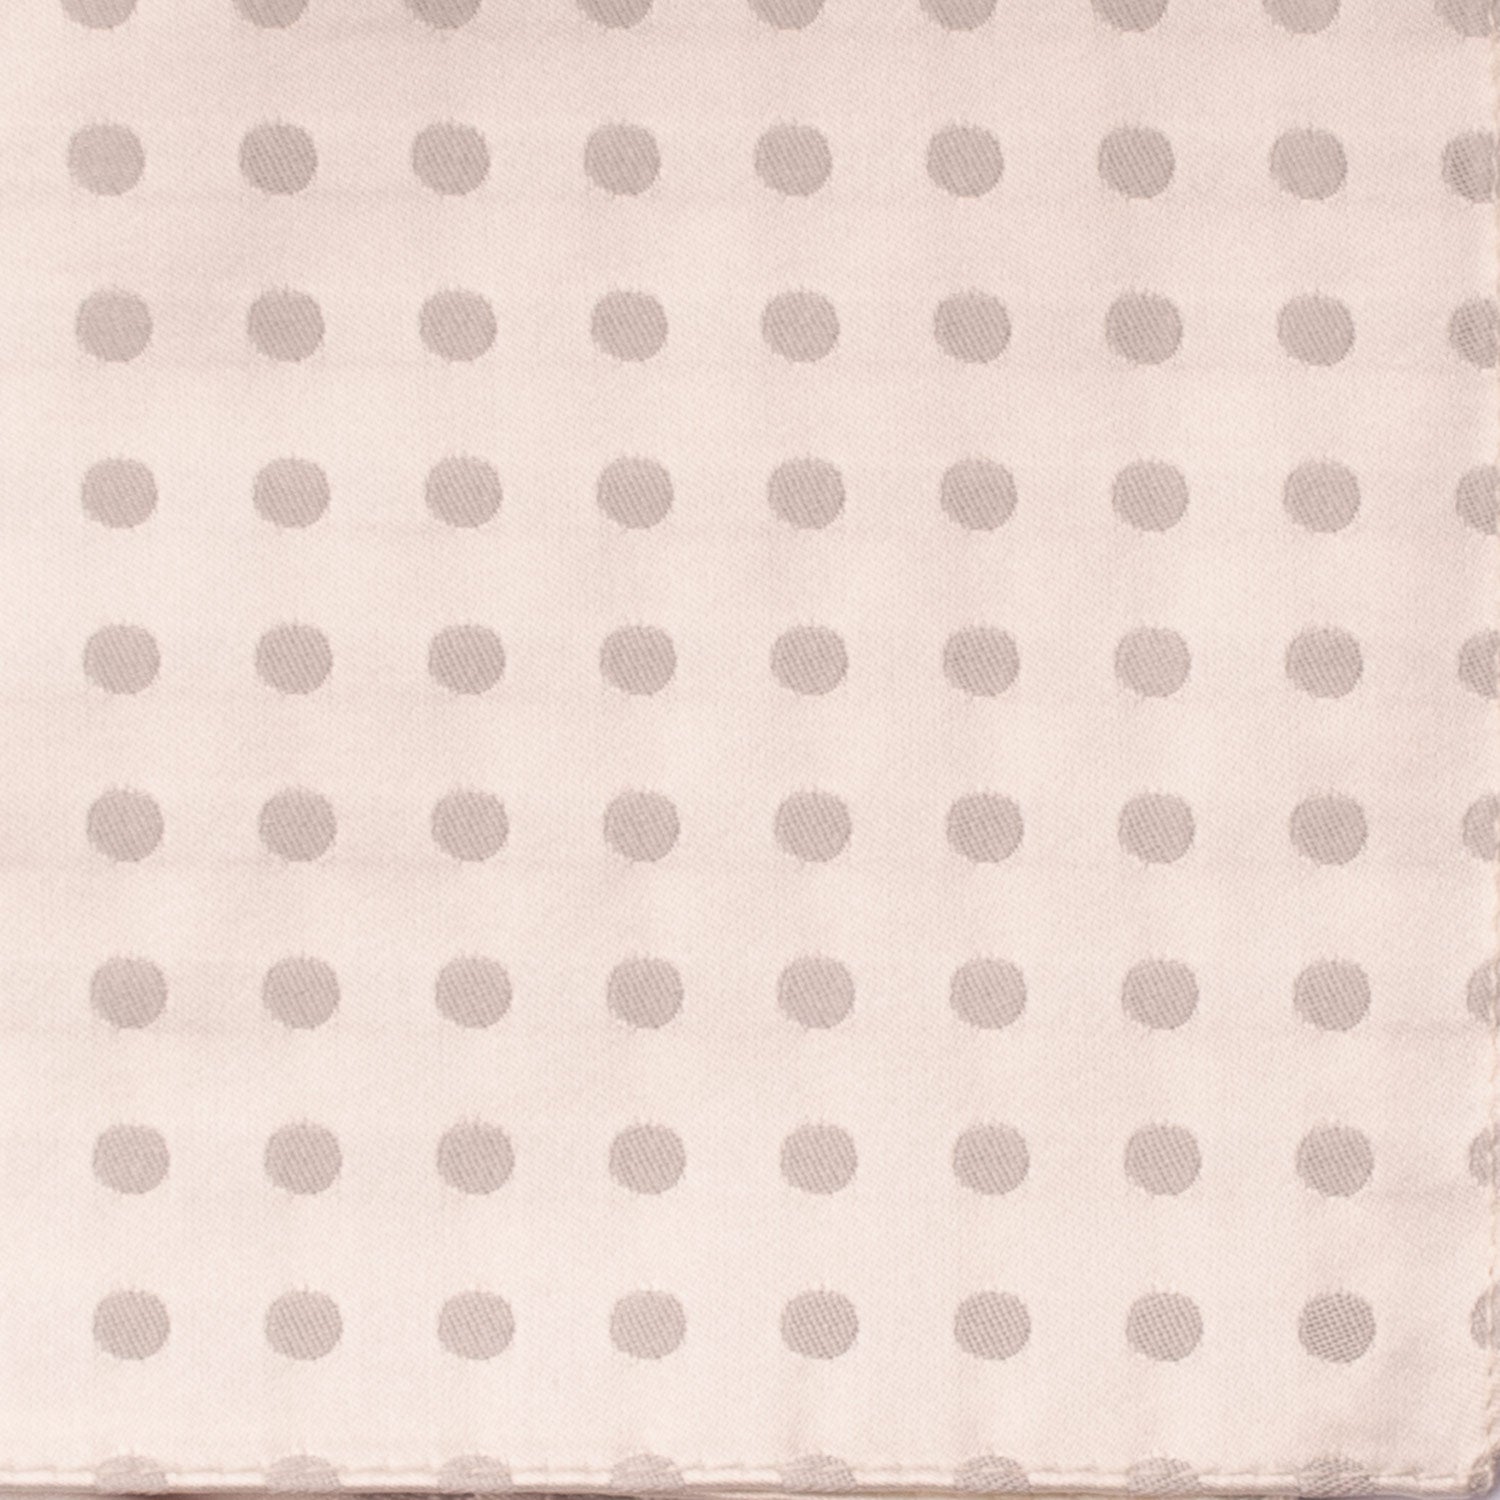 Fazzoletto da Taschino Vintage di Seta Bianco Perla a Pois Grigio Argento POCV707 Dettaglio